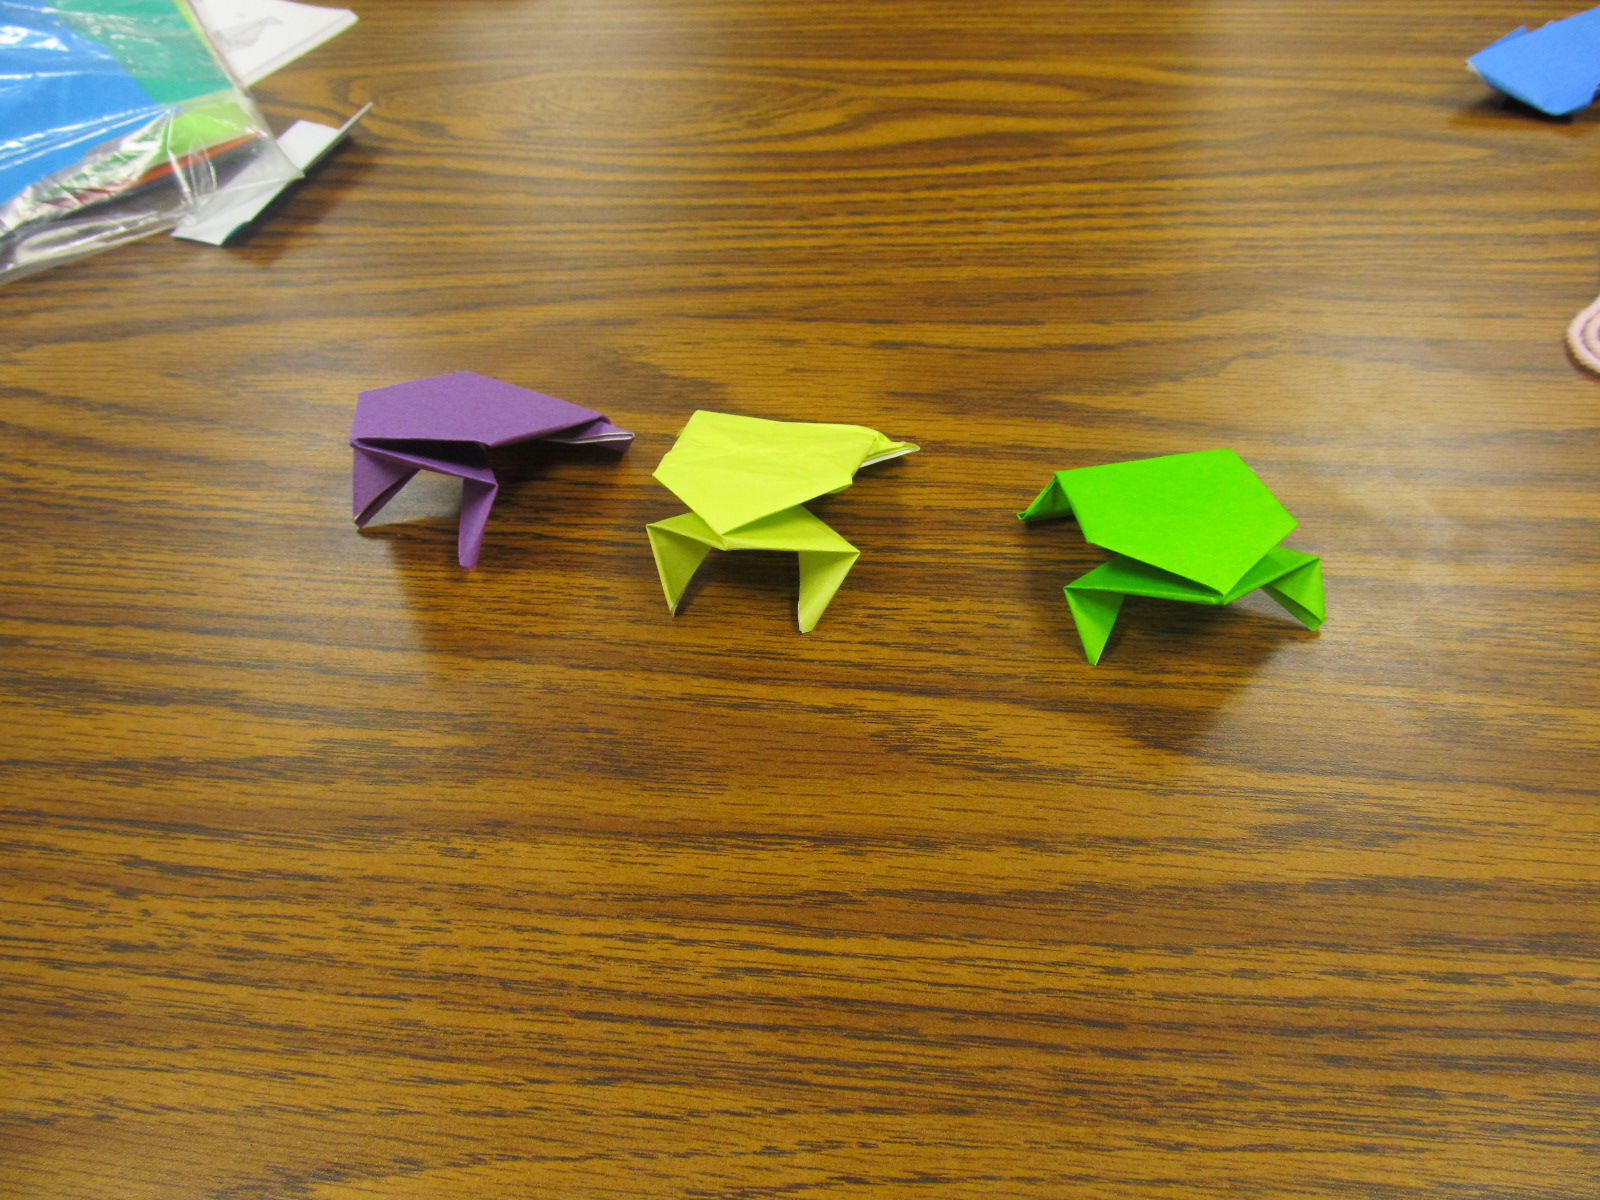 Origami 7